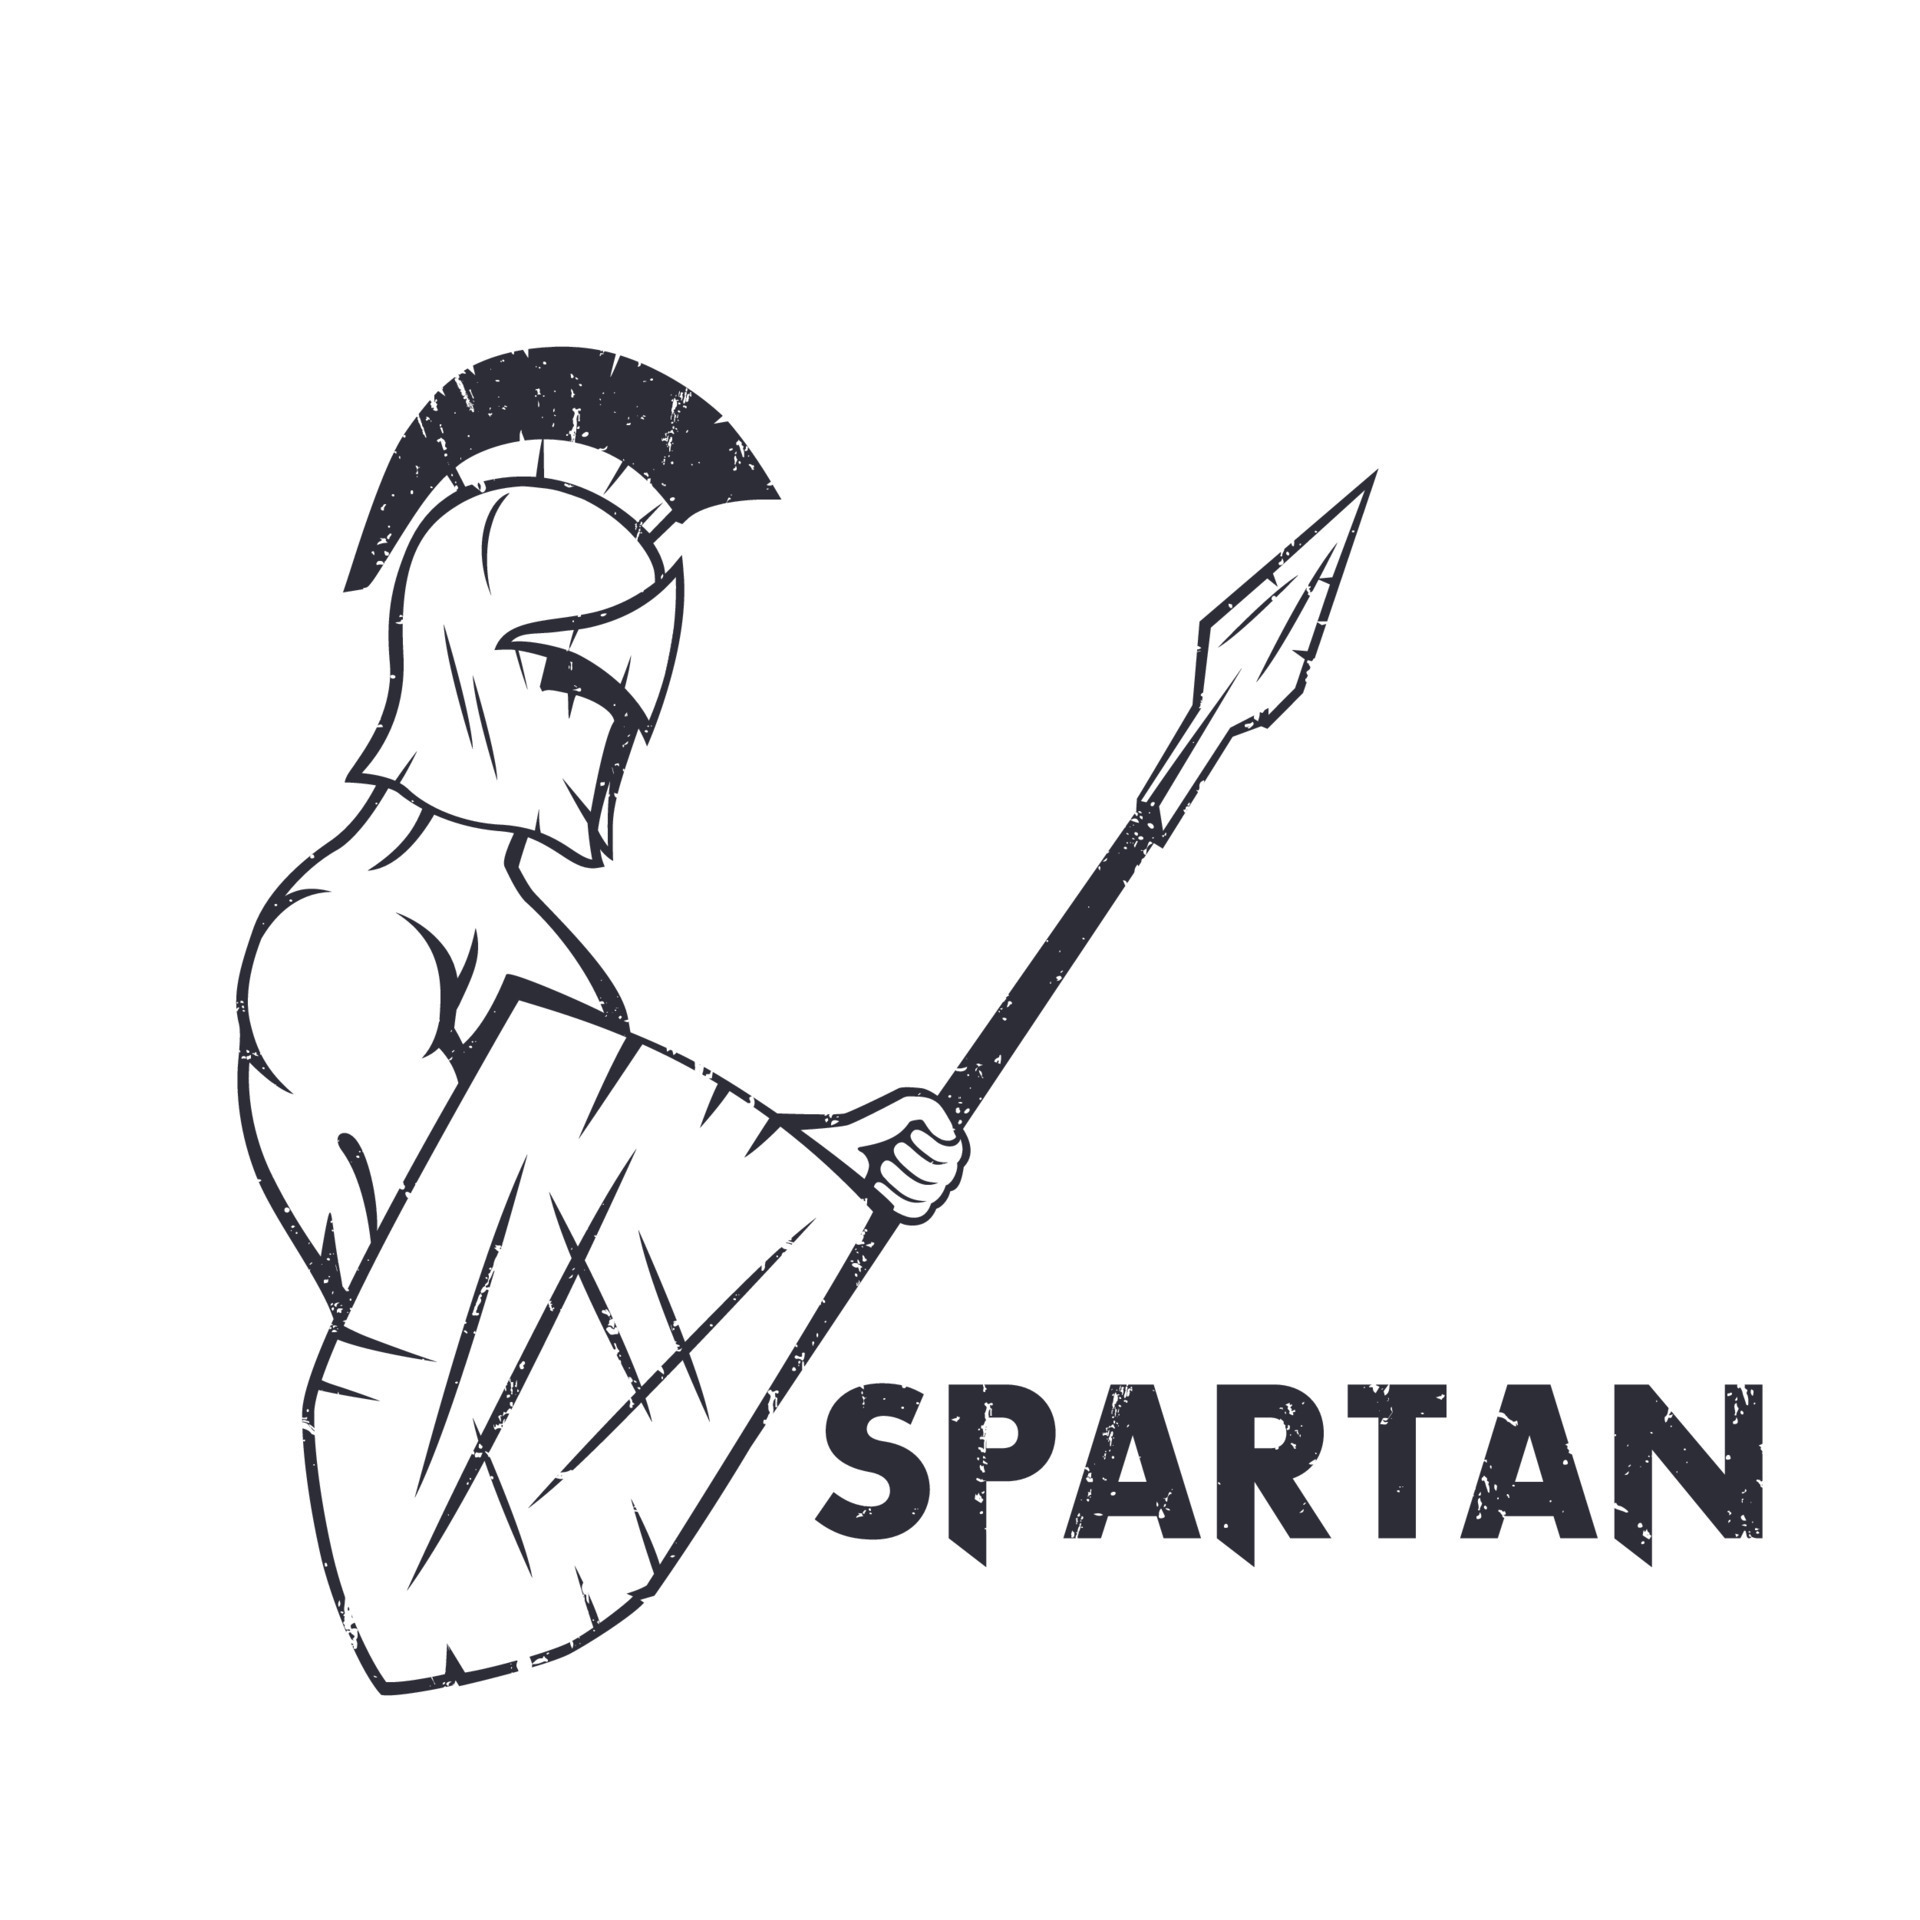 Spartan warrior!! Made it a few days ago... 13y/o here : r/drawing